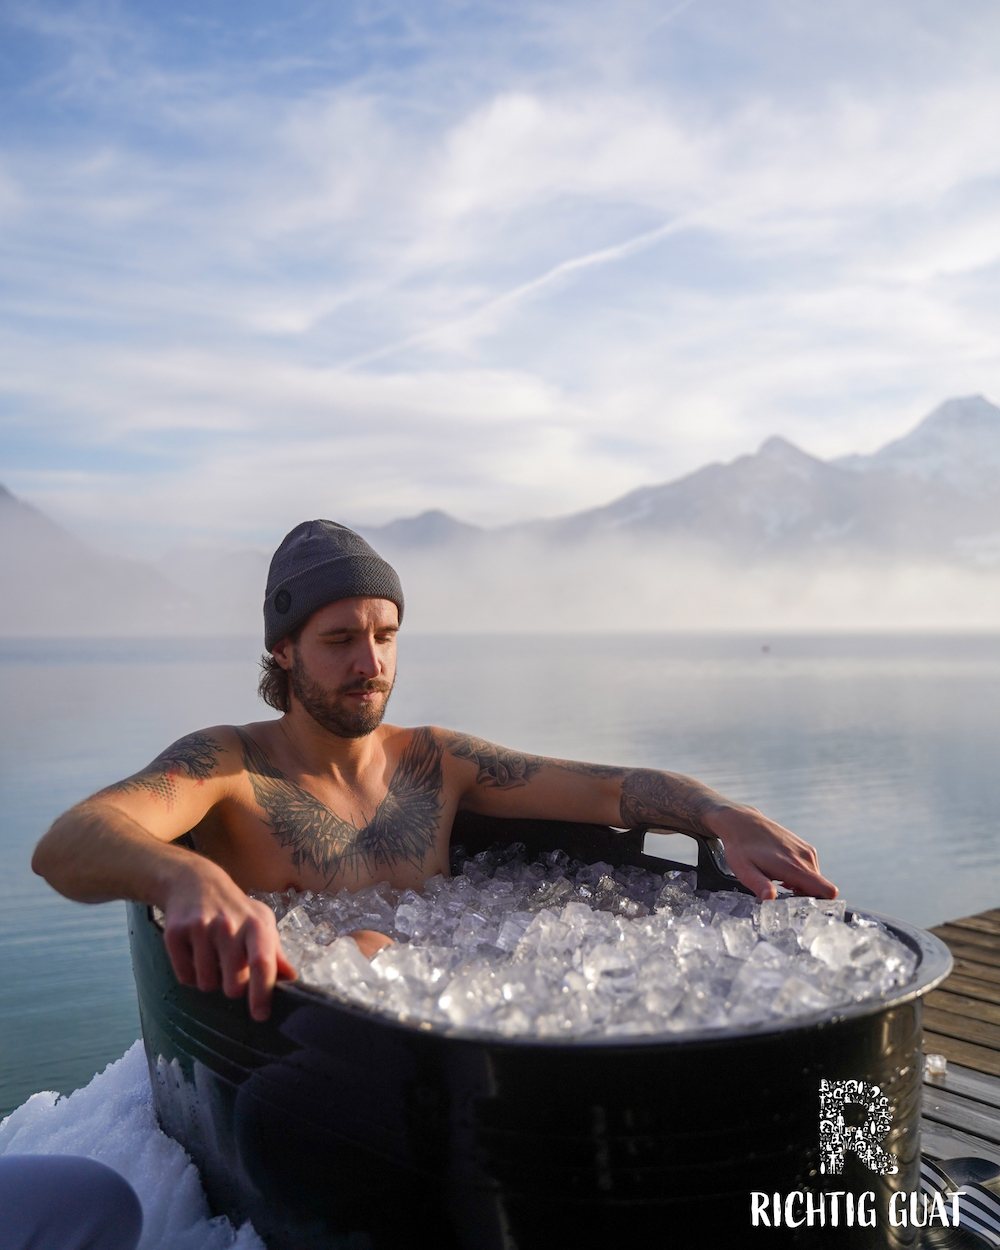 Eisiges Bad: Im Hotel Karnerhof am Faaker See kann man das Eisbaden richtig erlernen